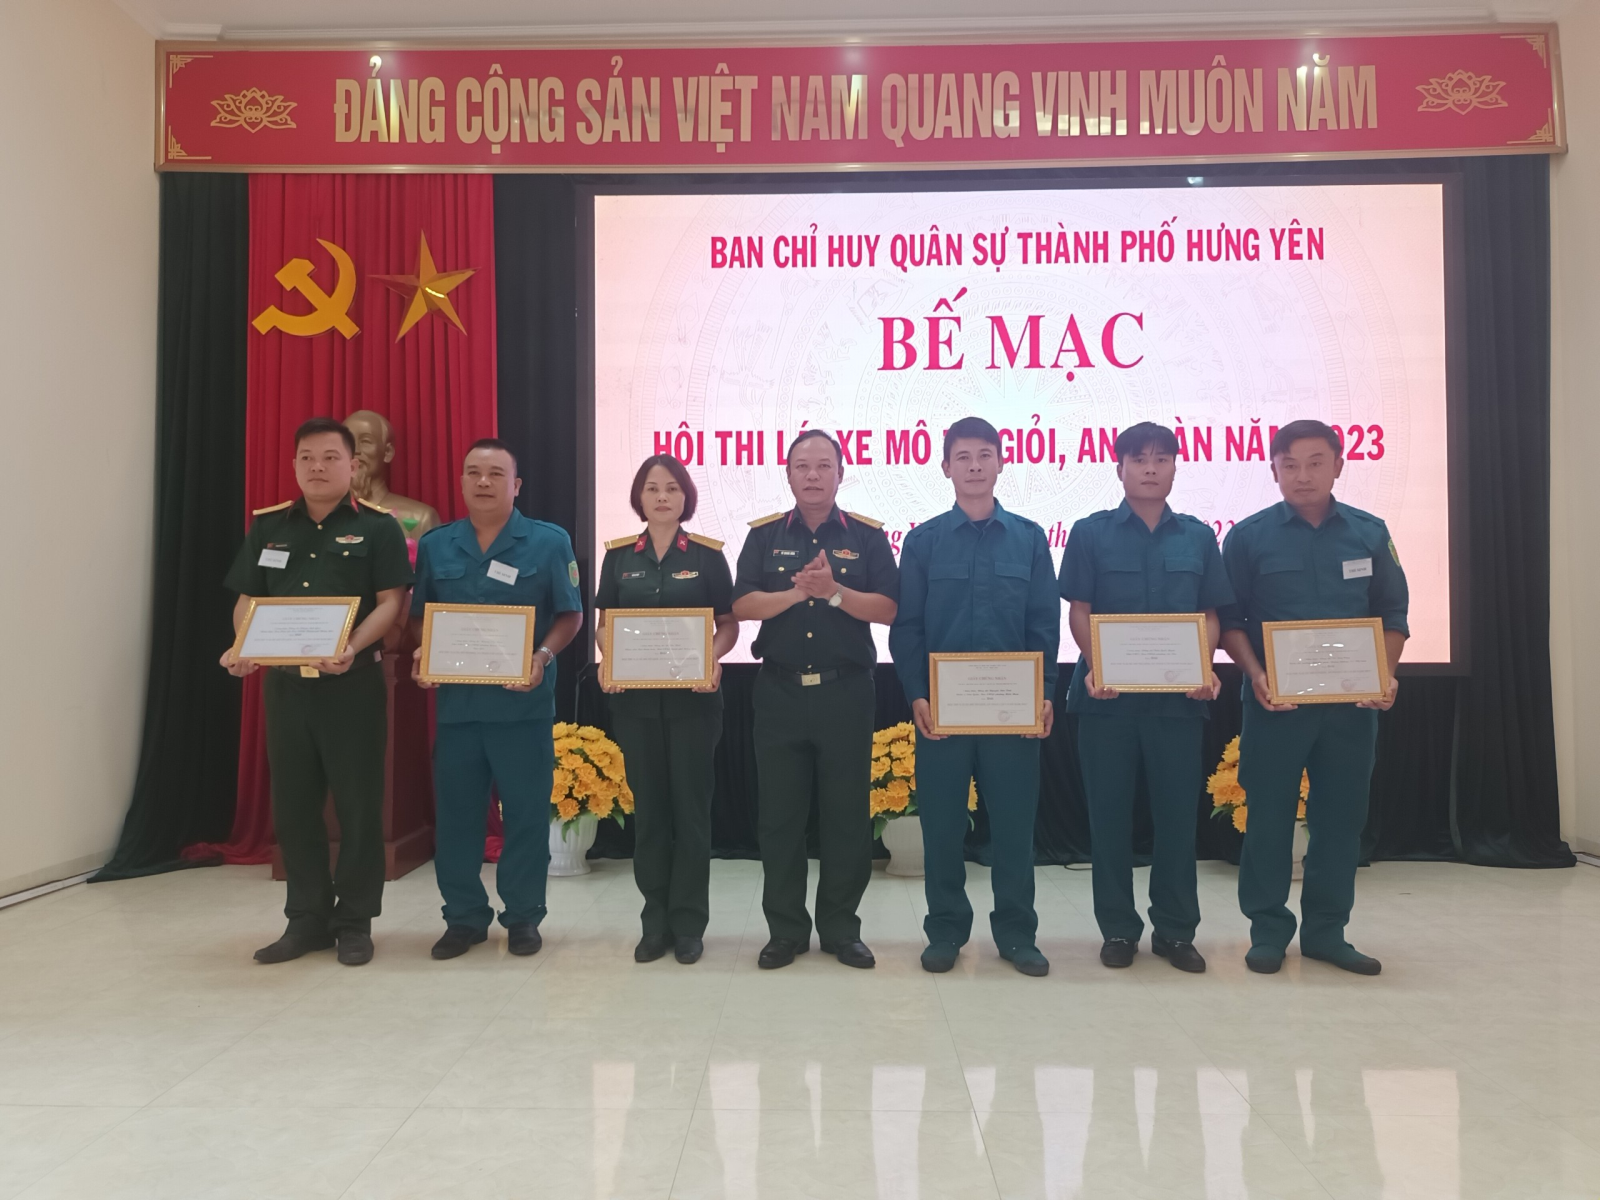 Ban Chỉ huy Quân sự thành phố Hưng Yên tổ chức hội thi  lái xe mô tô giỏi, an toàn năm 2023